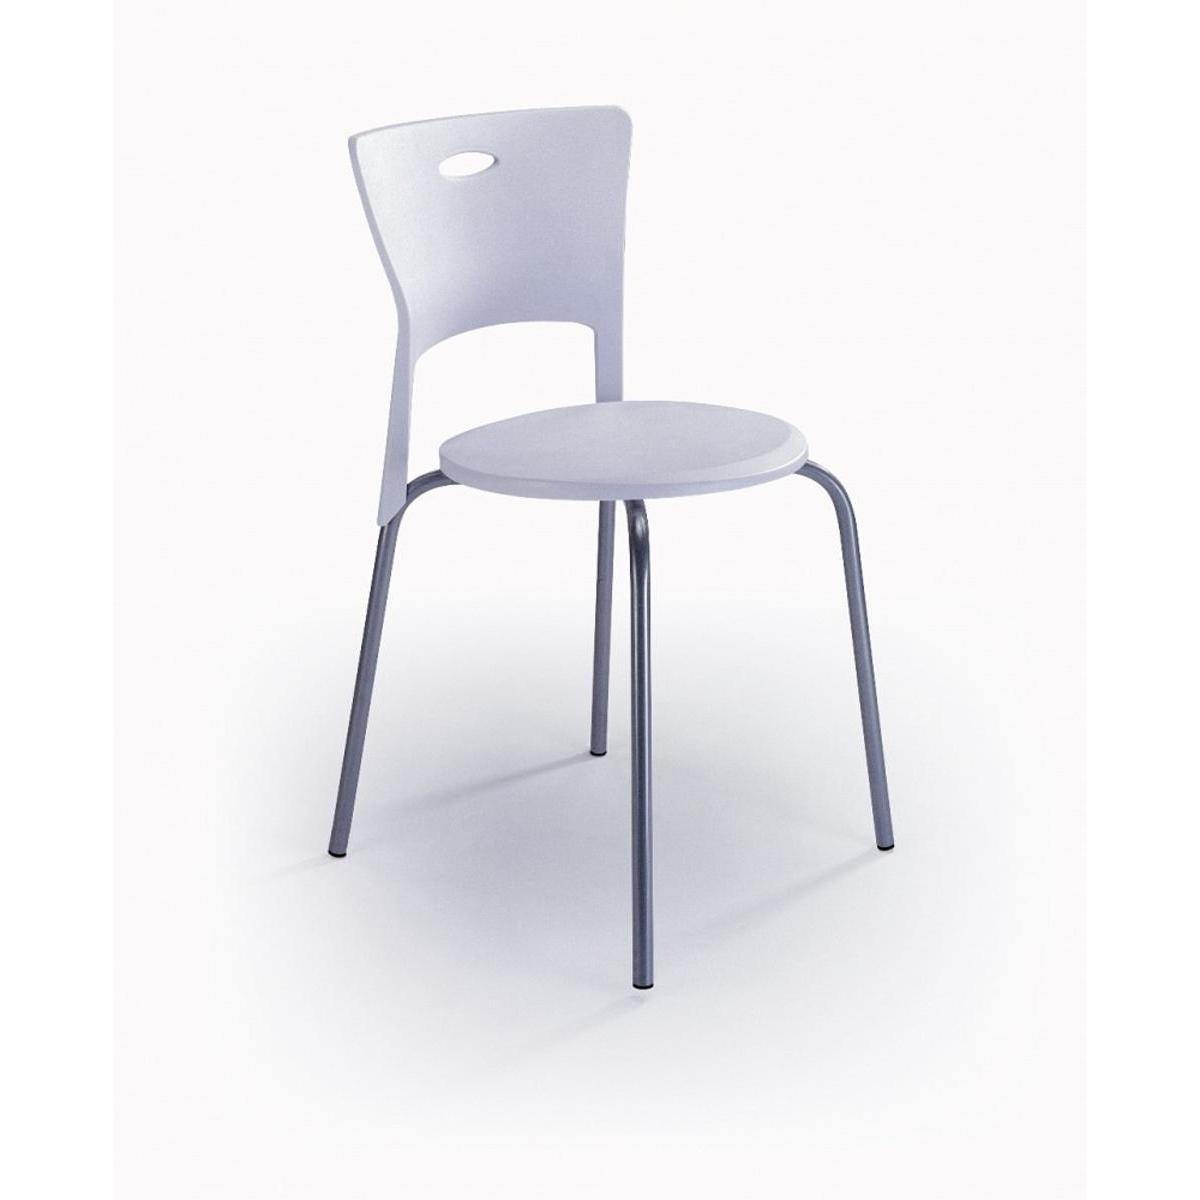 Chaise empilable - Polypropylène et tube métallique - 43,5 x 46 x H 77,5 cm - Blanc